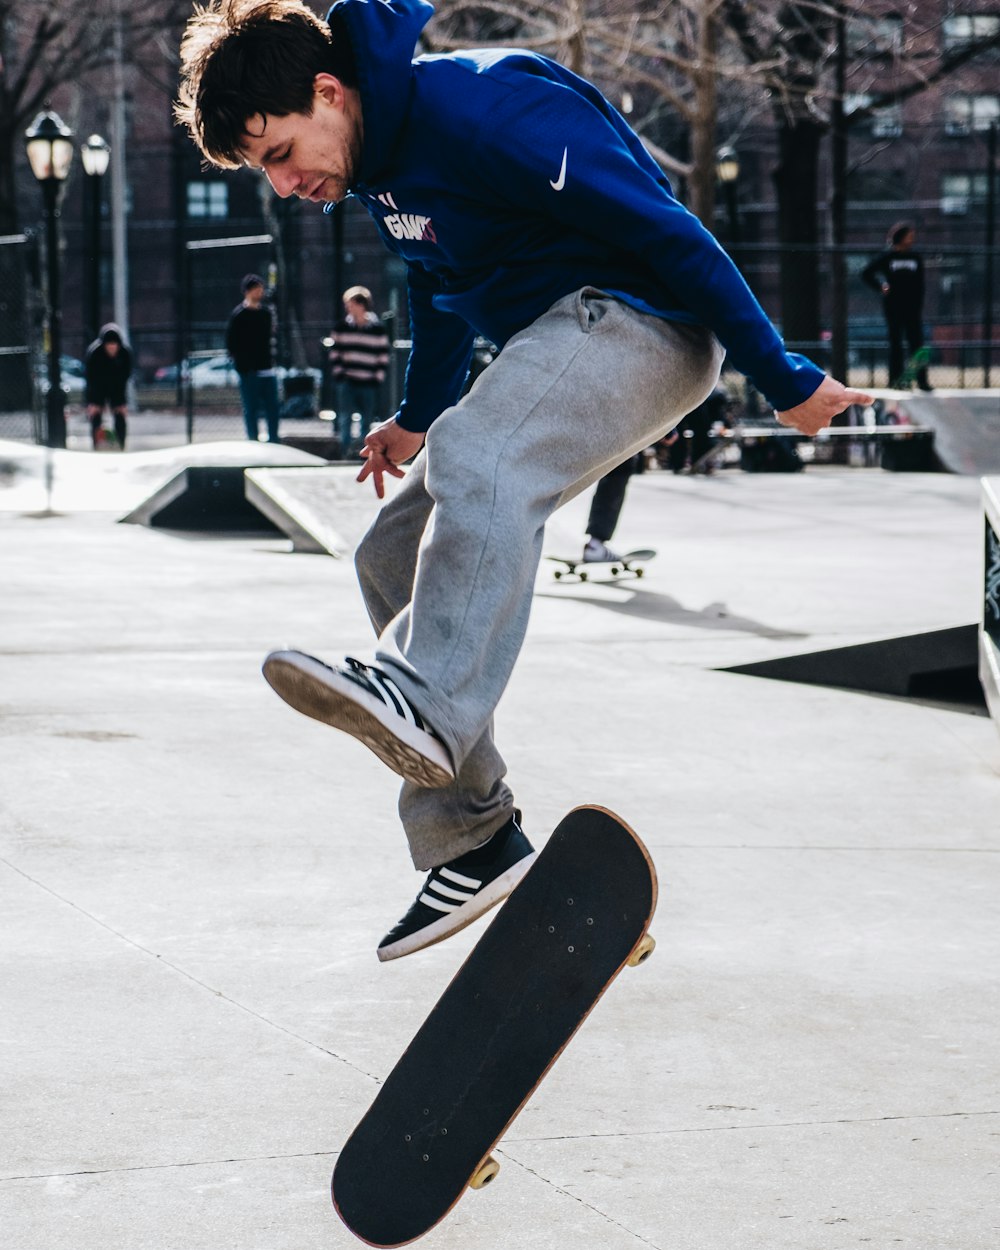 スケートボードをする男